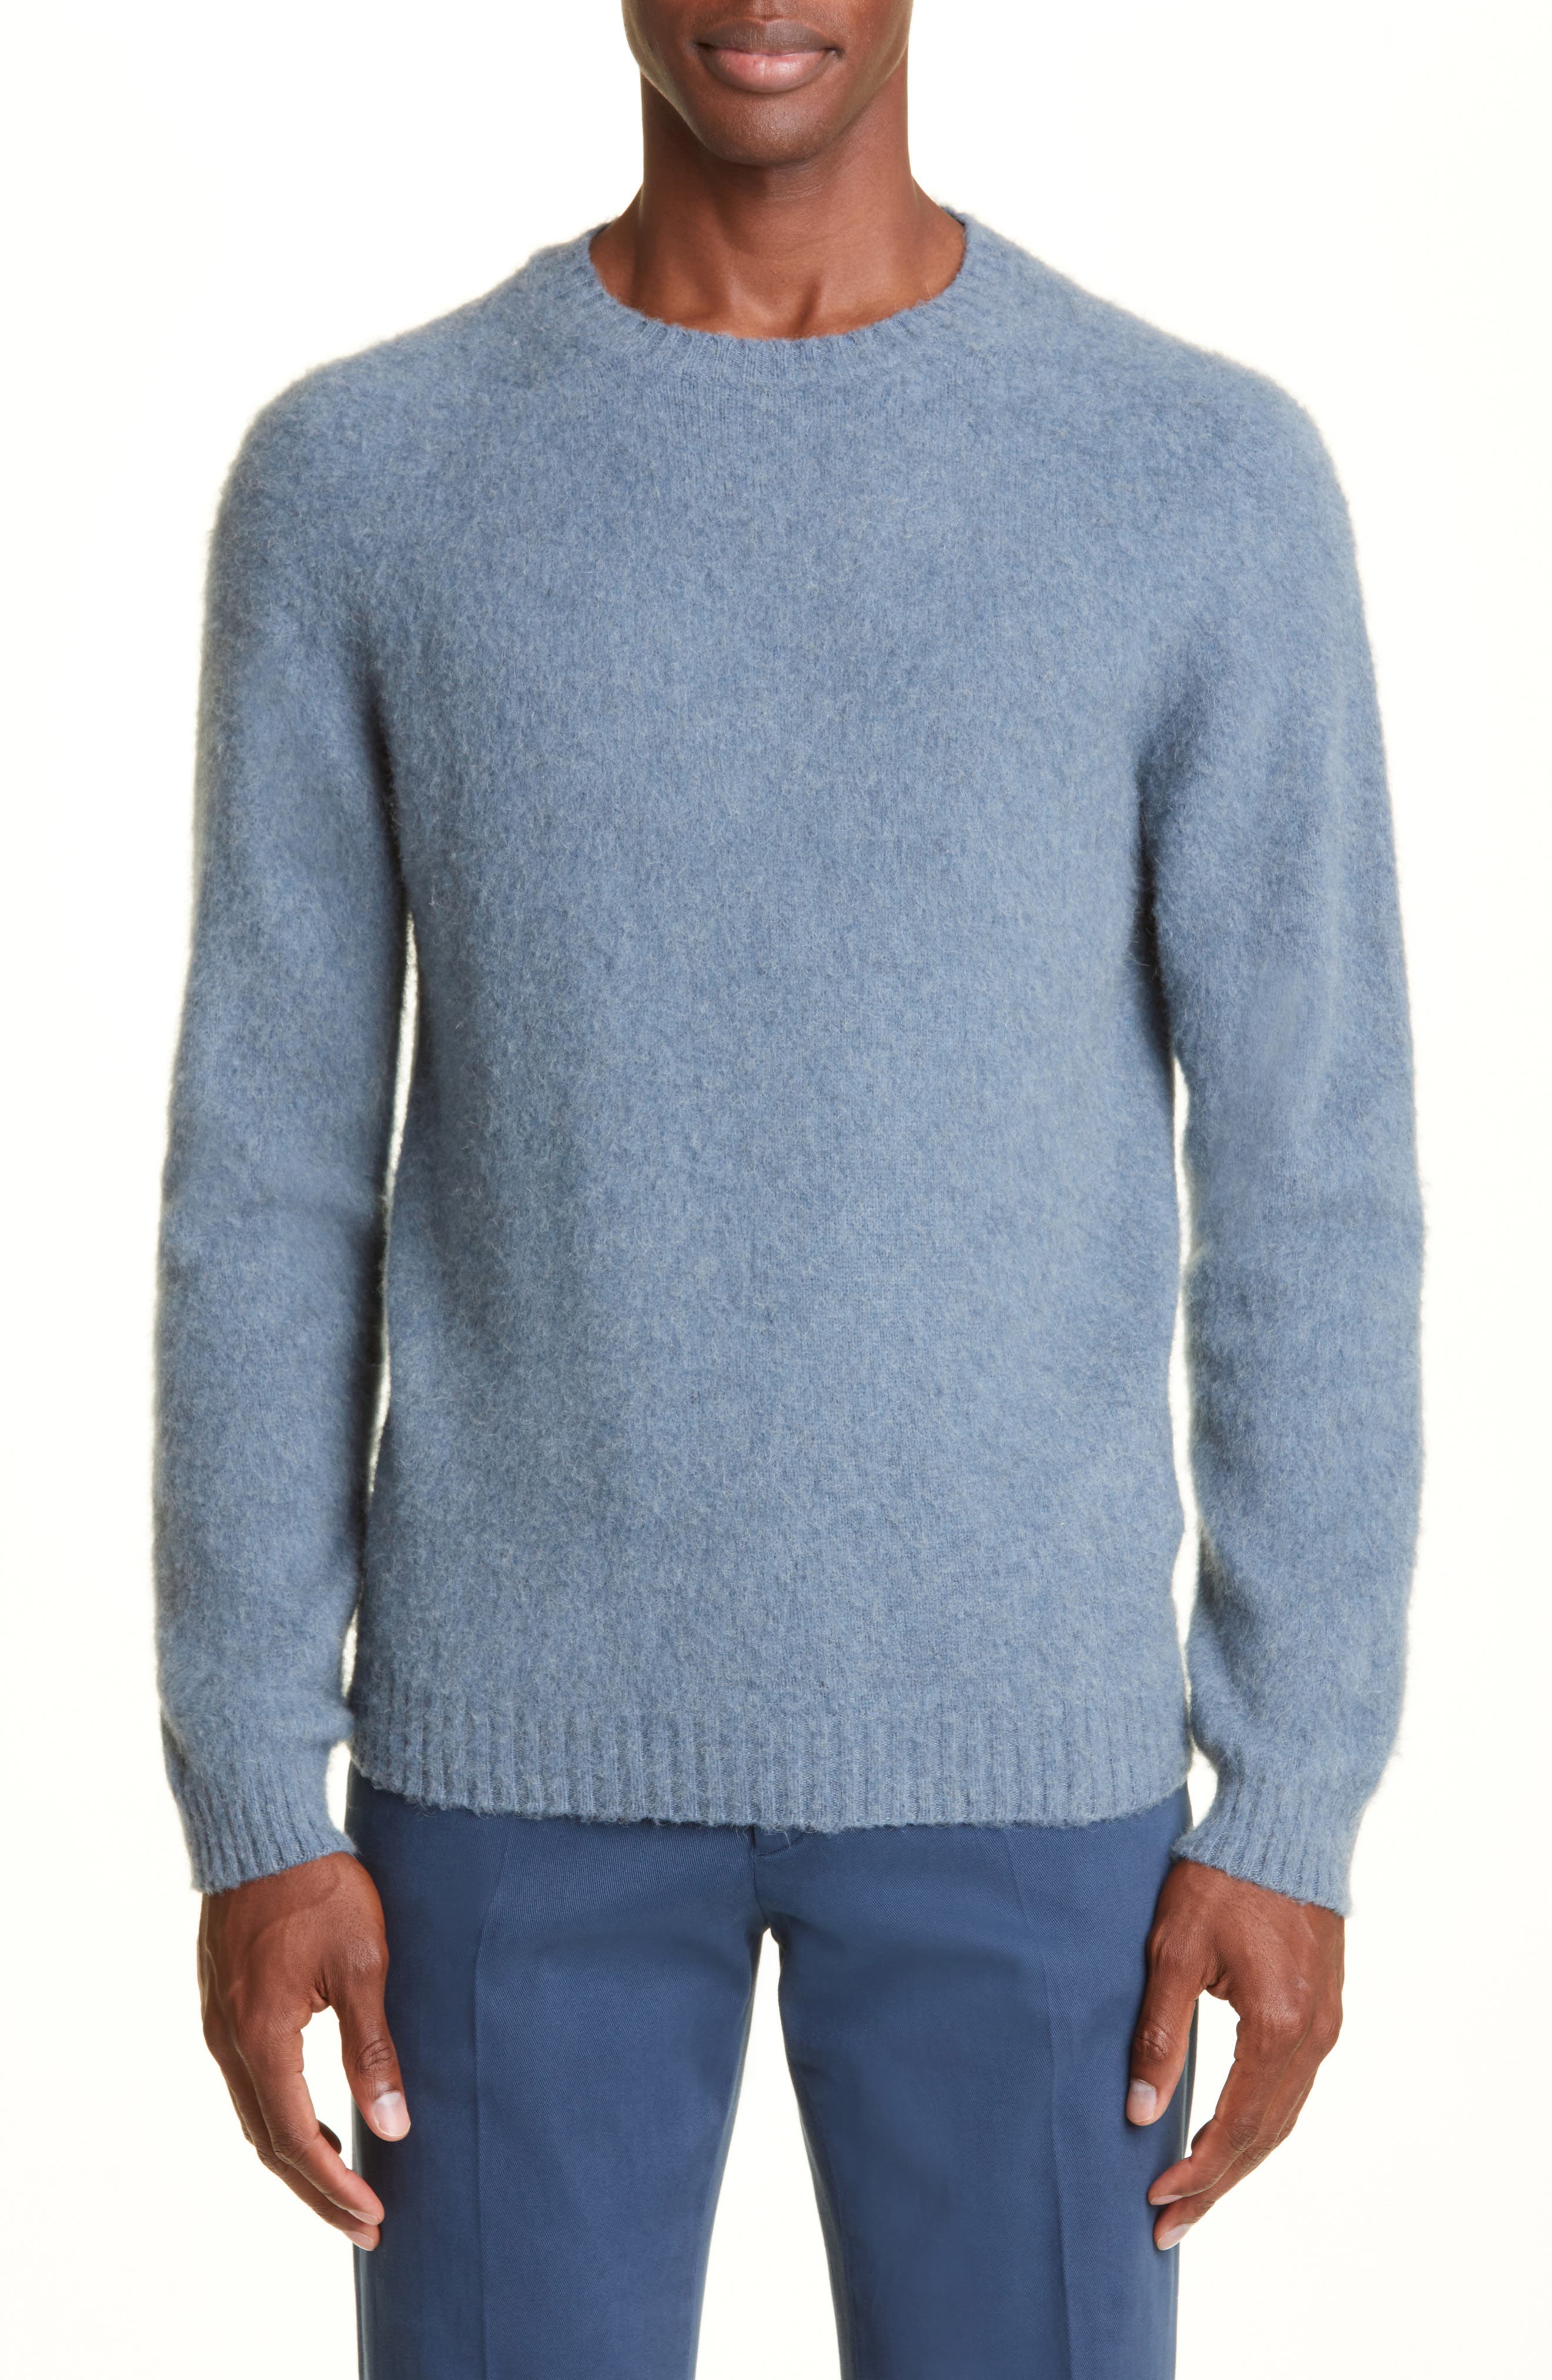 Bloomingdales Men Clothing Sweaters Sweatshirts Cotton Blend Crewneck Tee 